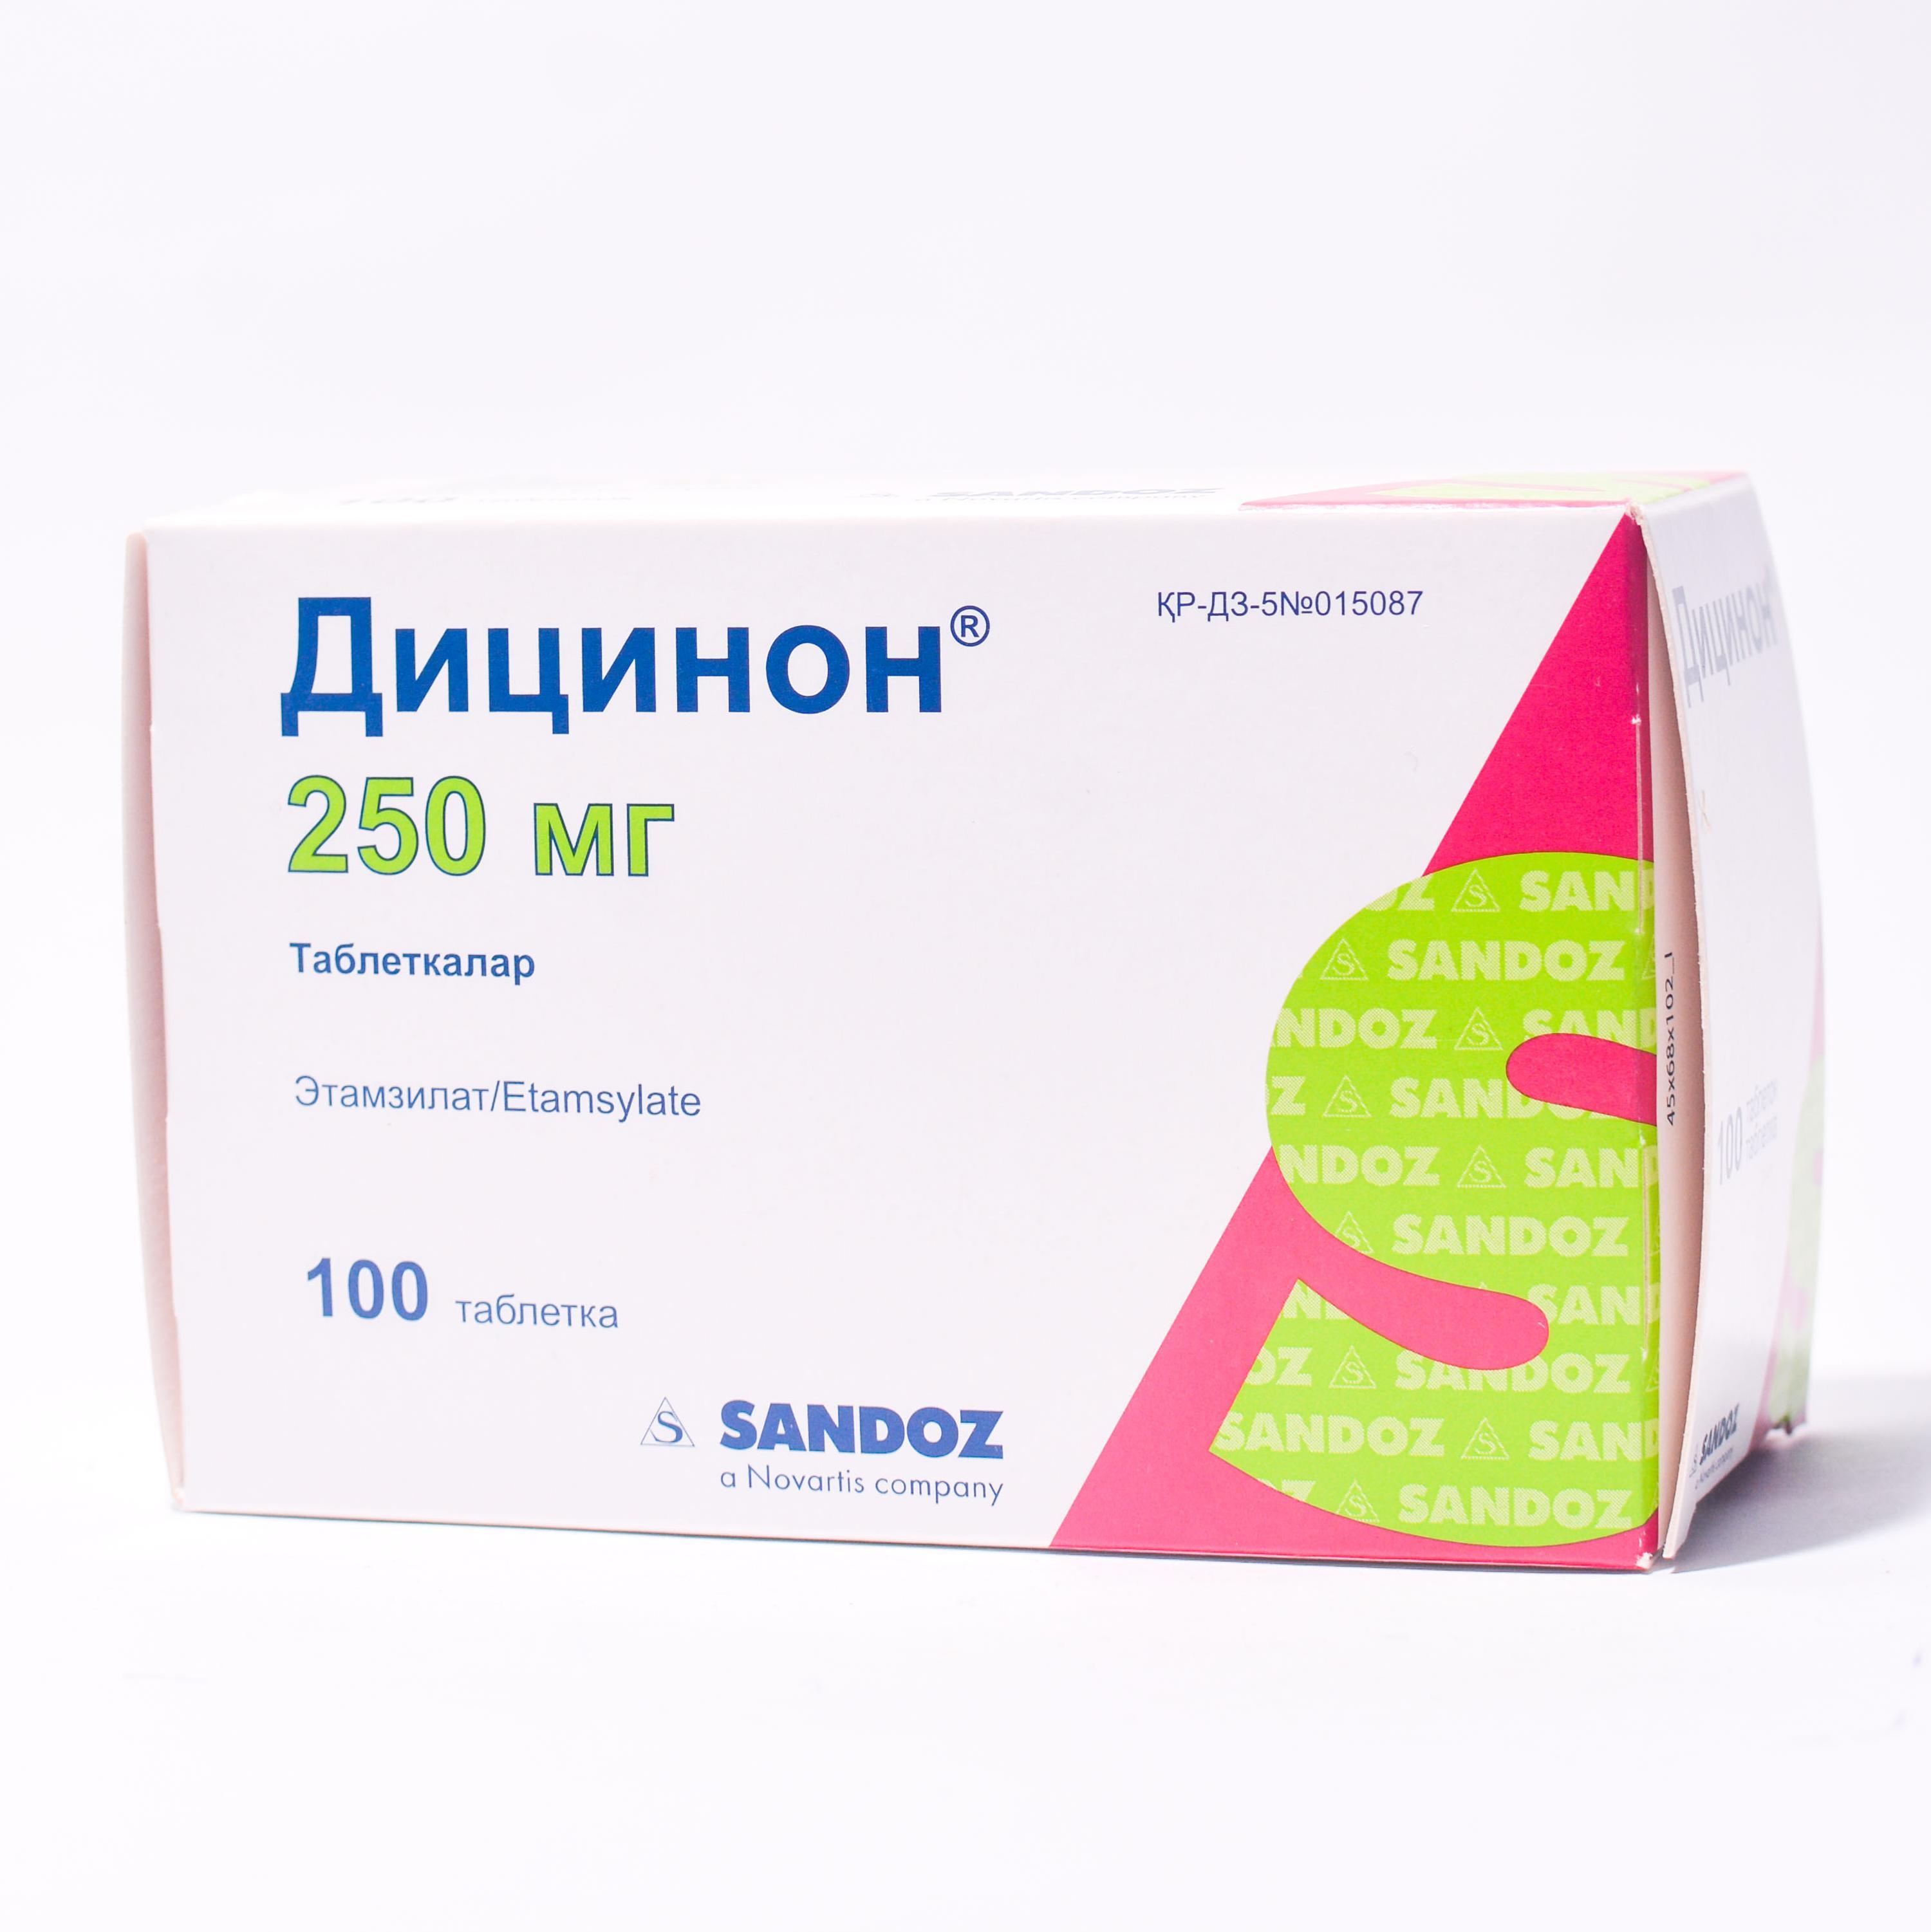 Дицинон 250 мг таблетки